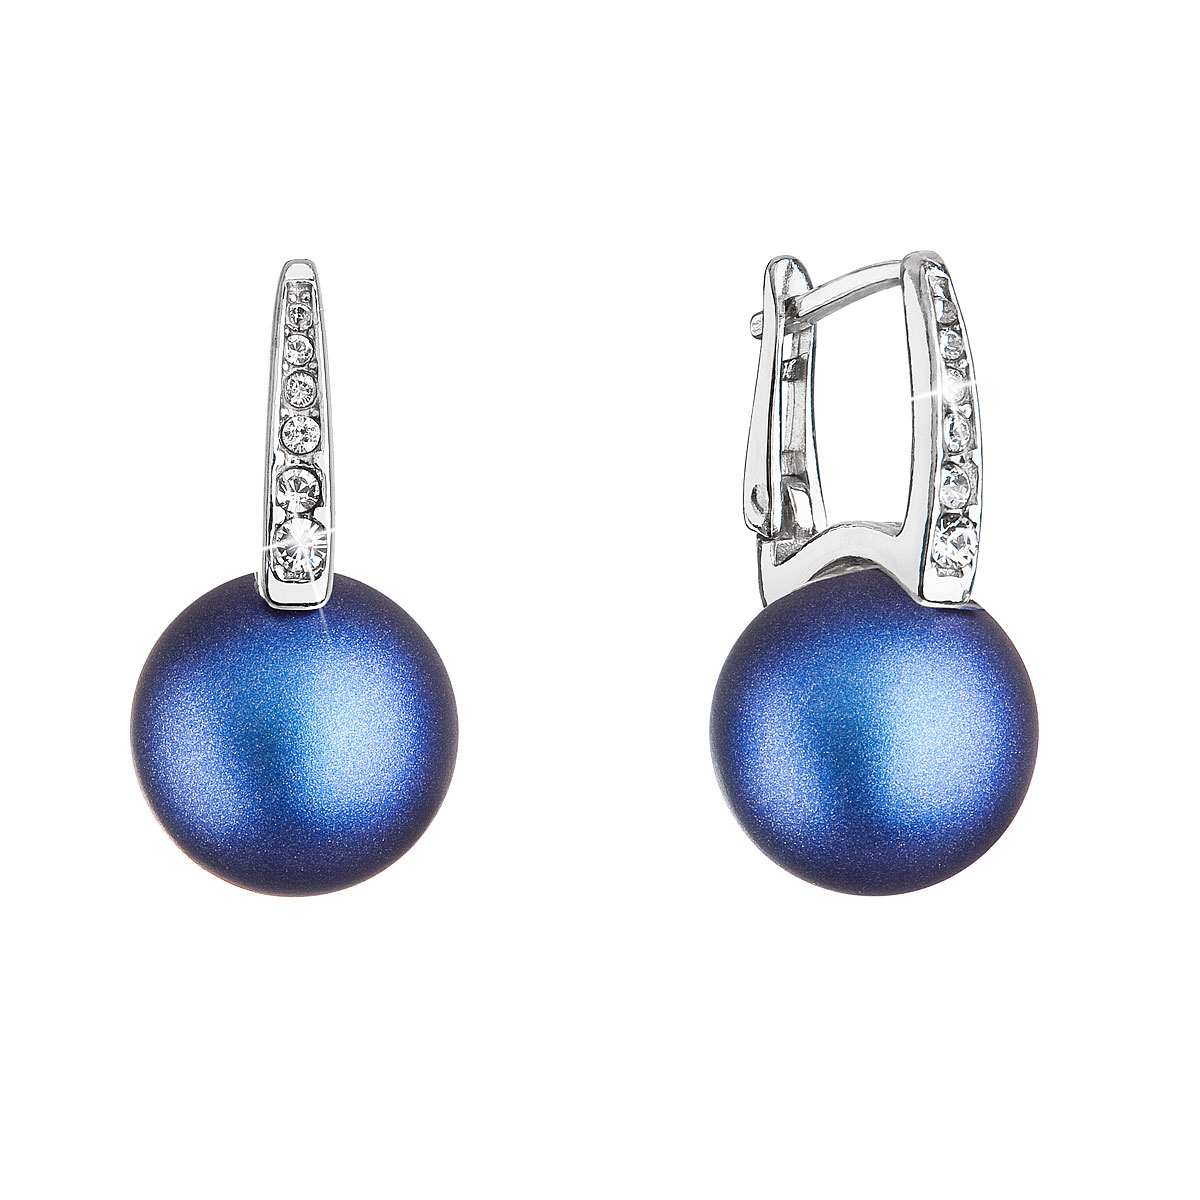 Strieborné náušnice visiace so Swarovski perlou a kryštály 31301.3 tmavo modré